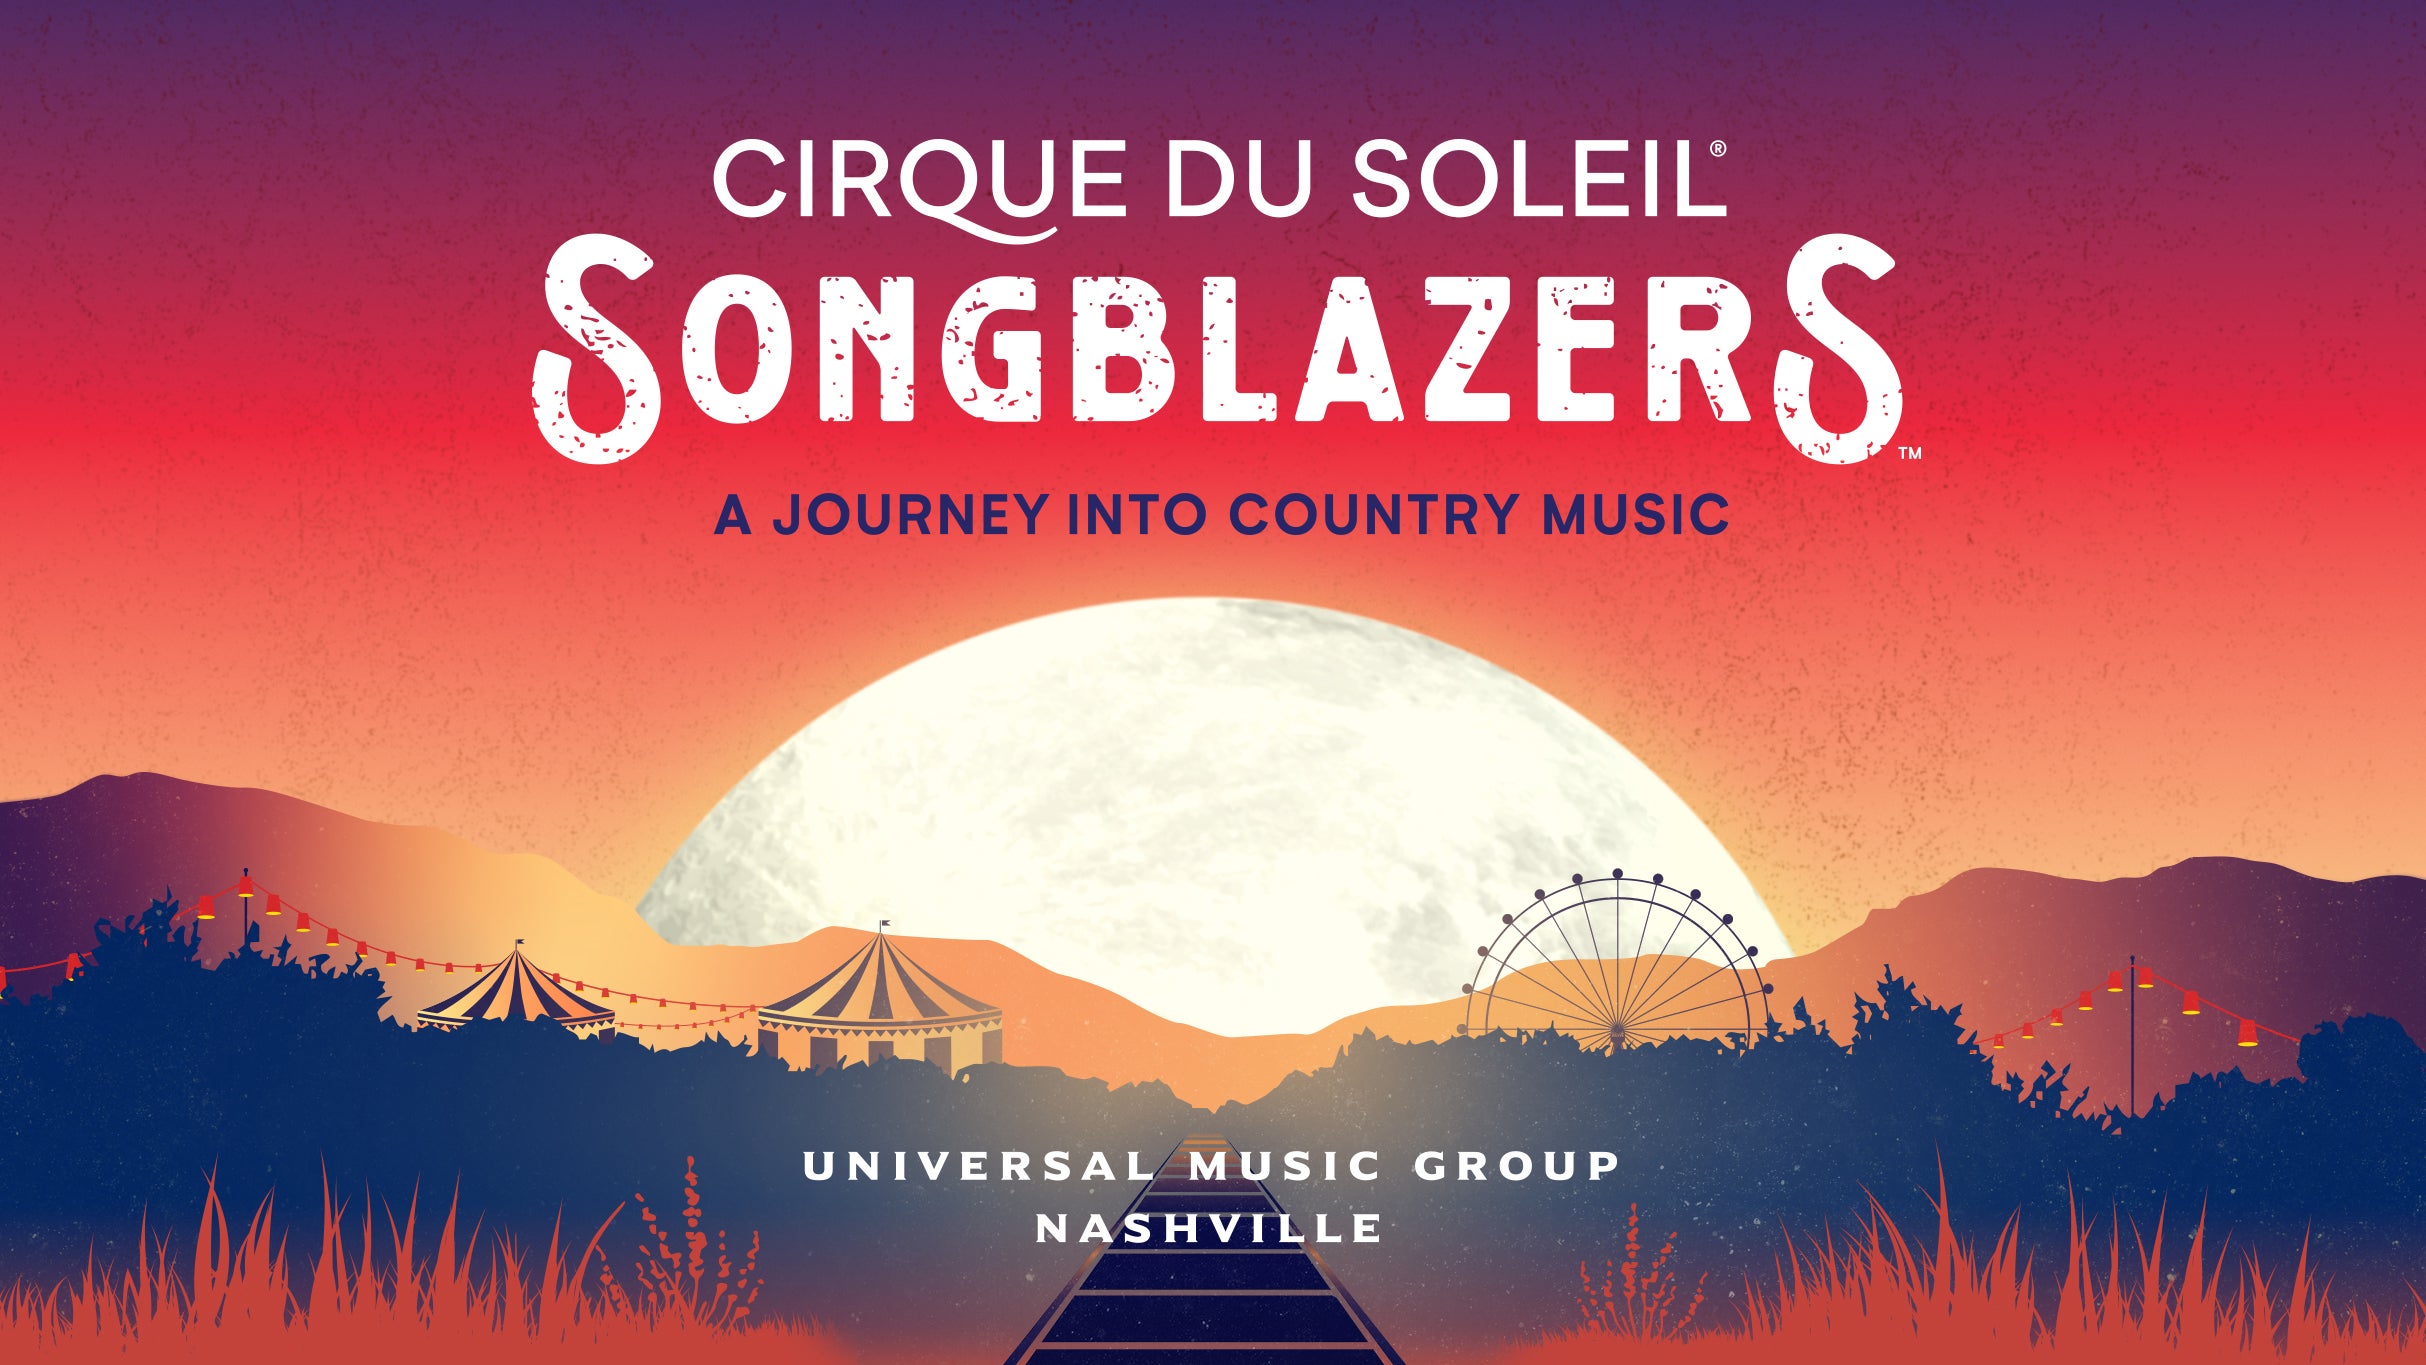 Cirque du Soleil: Songblazers presales in Dallas